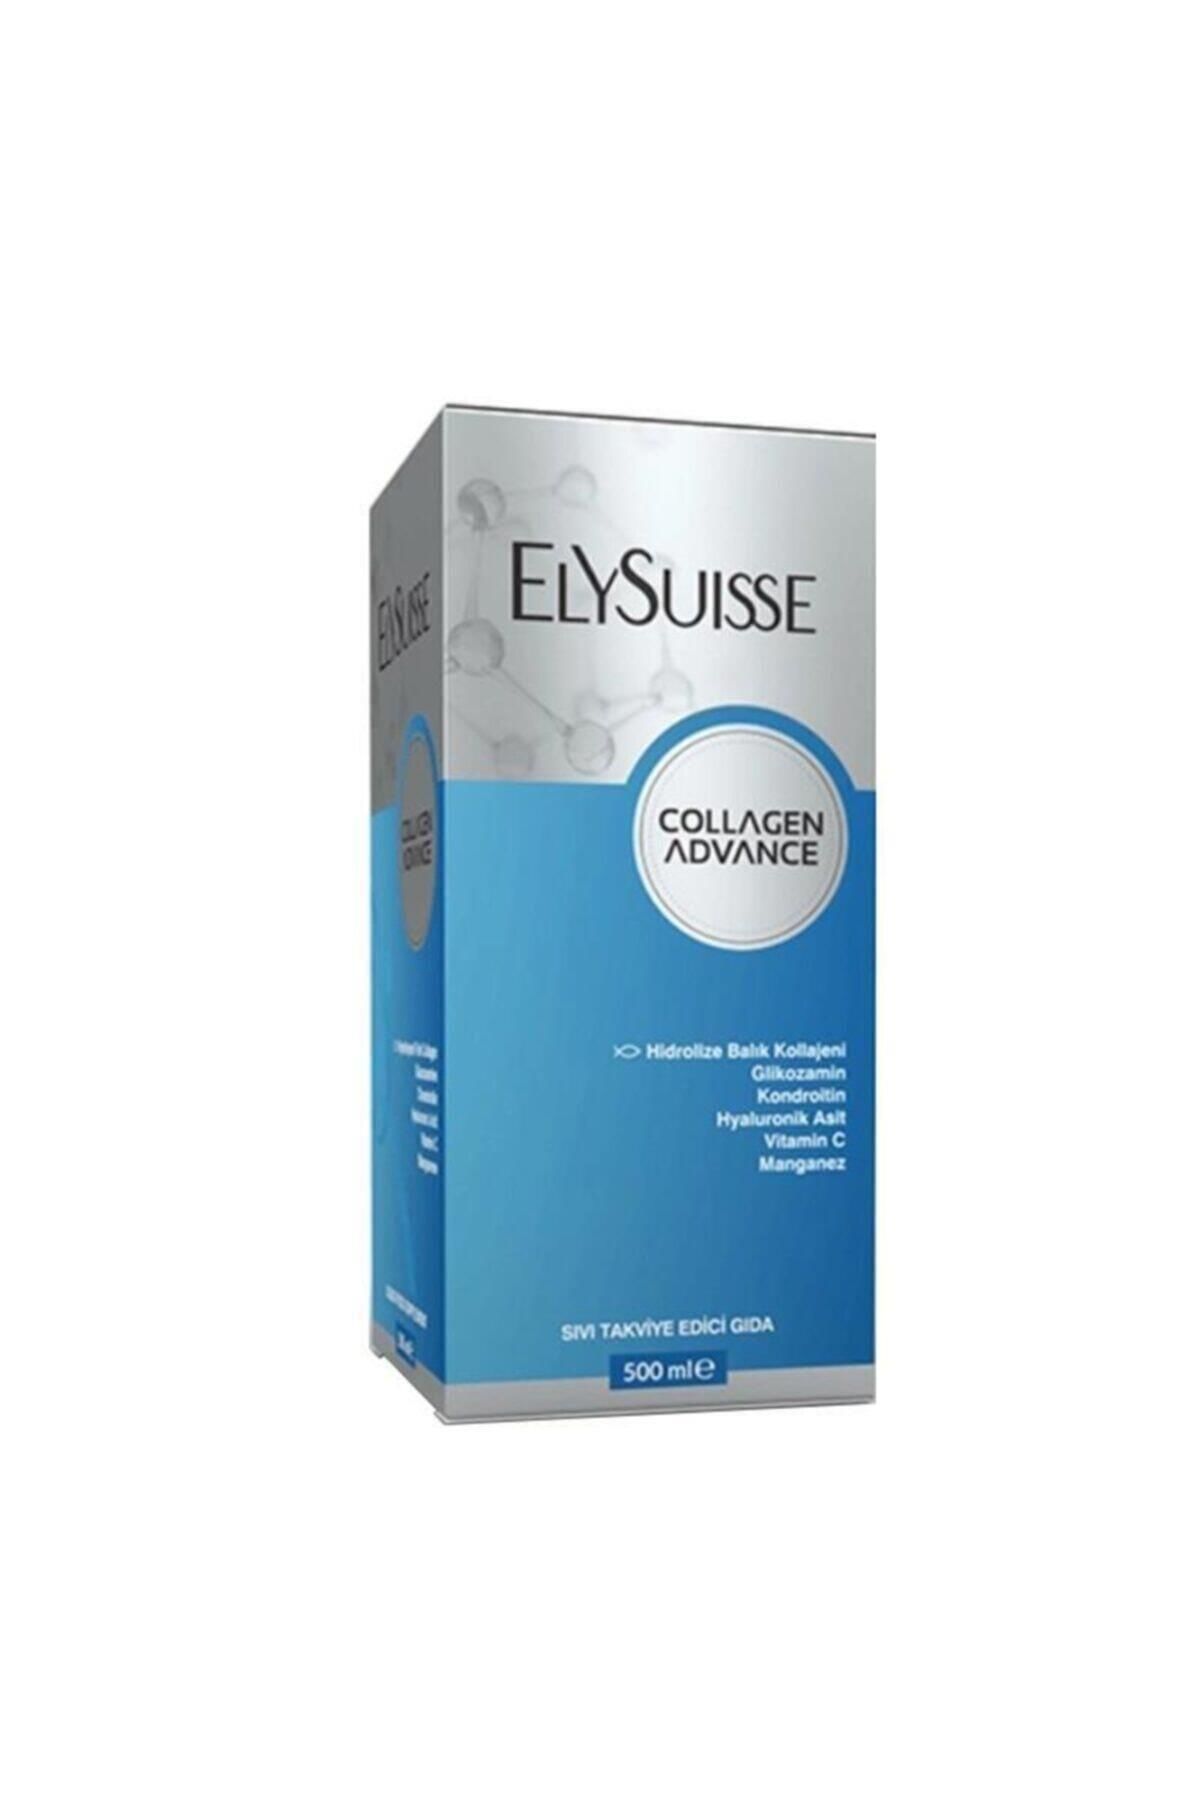 Elysuisse Collagen Advance 500 Ml-Takviye Edici Gıda